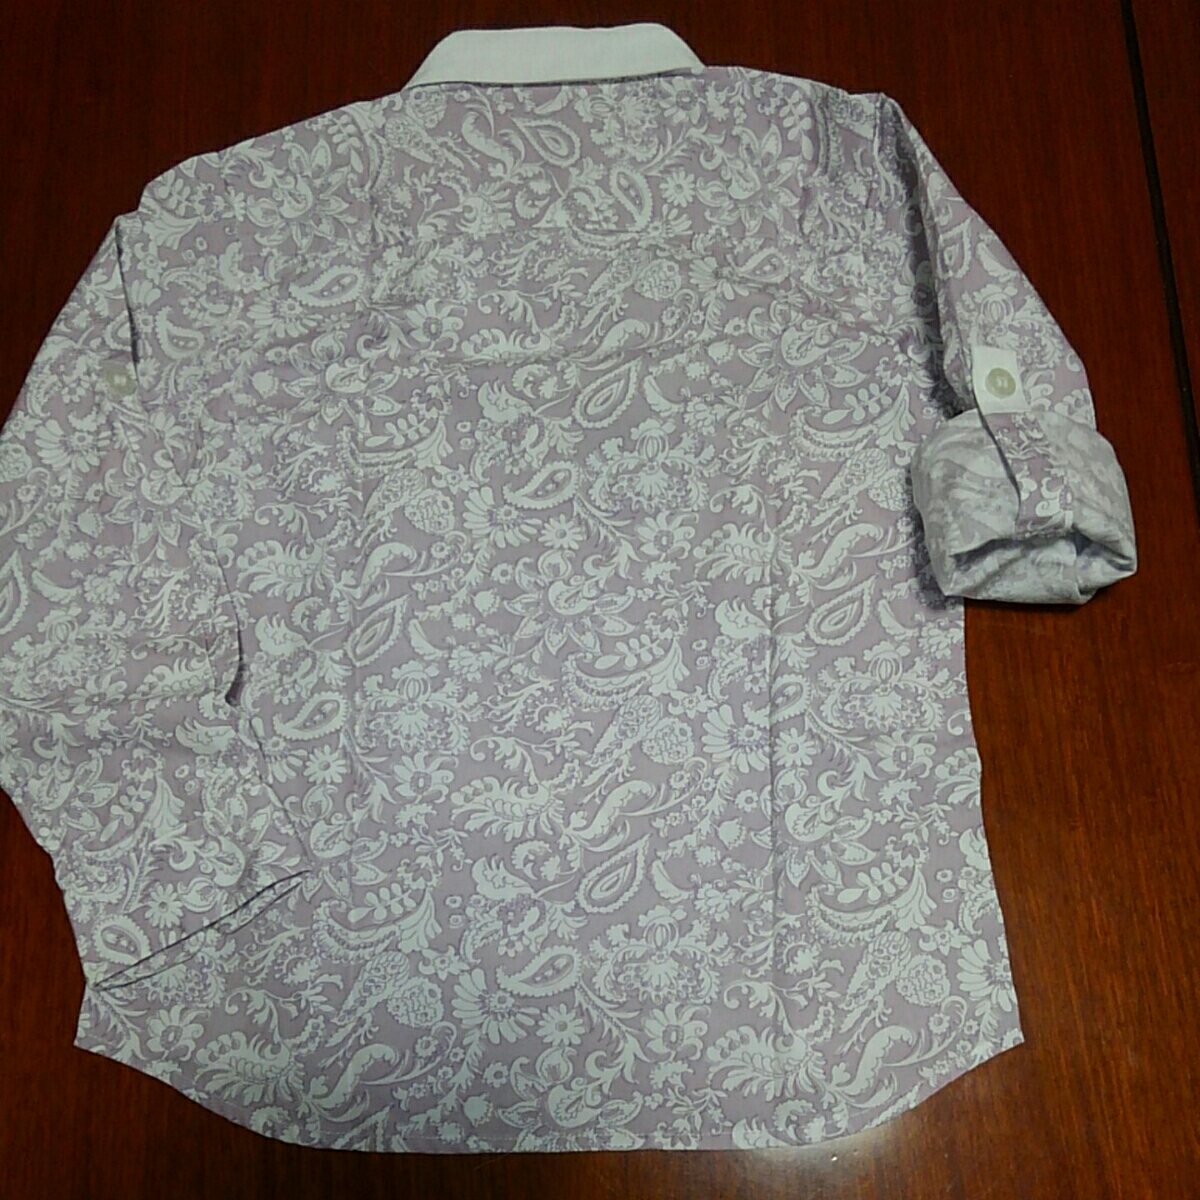  Comme Ca Du Mode рубашка с длинным рукавом 120. розовый peiz Lee рисунок б/у 